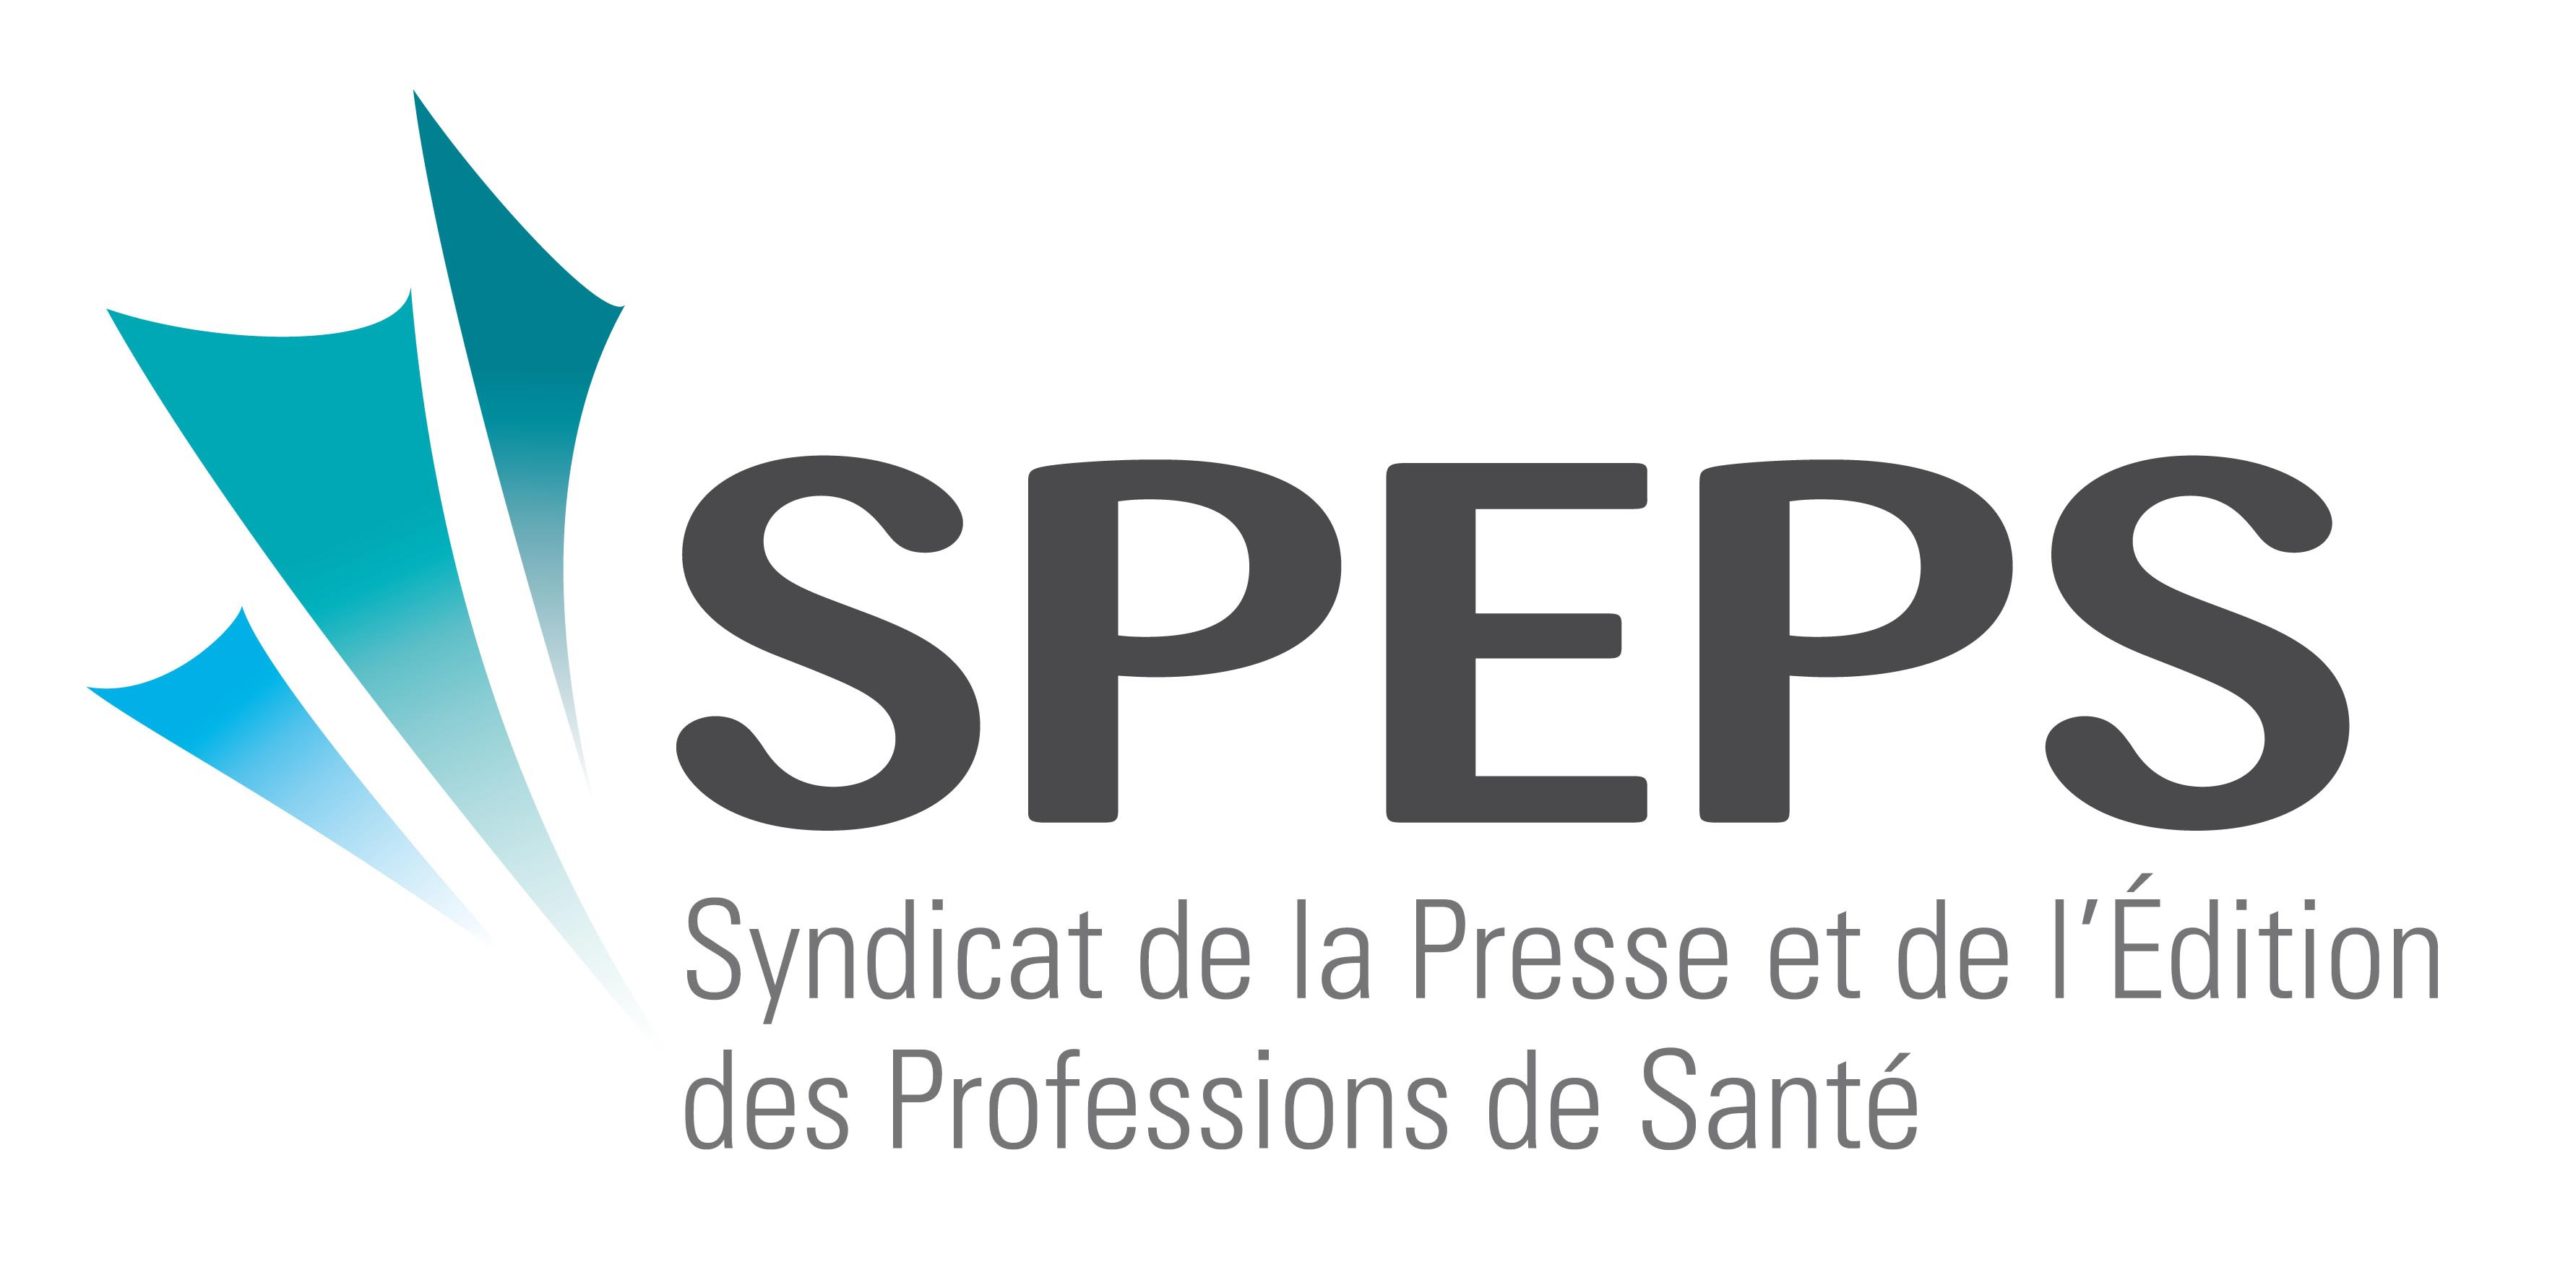 Assemblée générale 2019 du Syndicat de la Presse et de l’Édition des Professions de Santé (SPEPS)